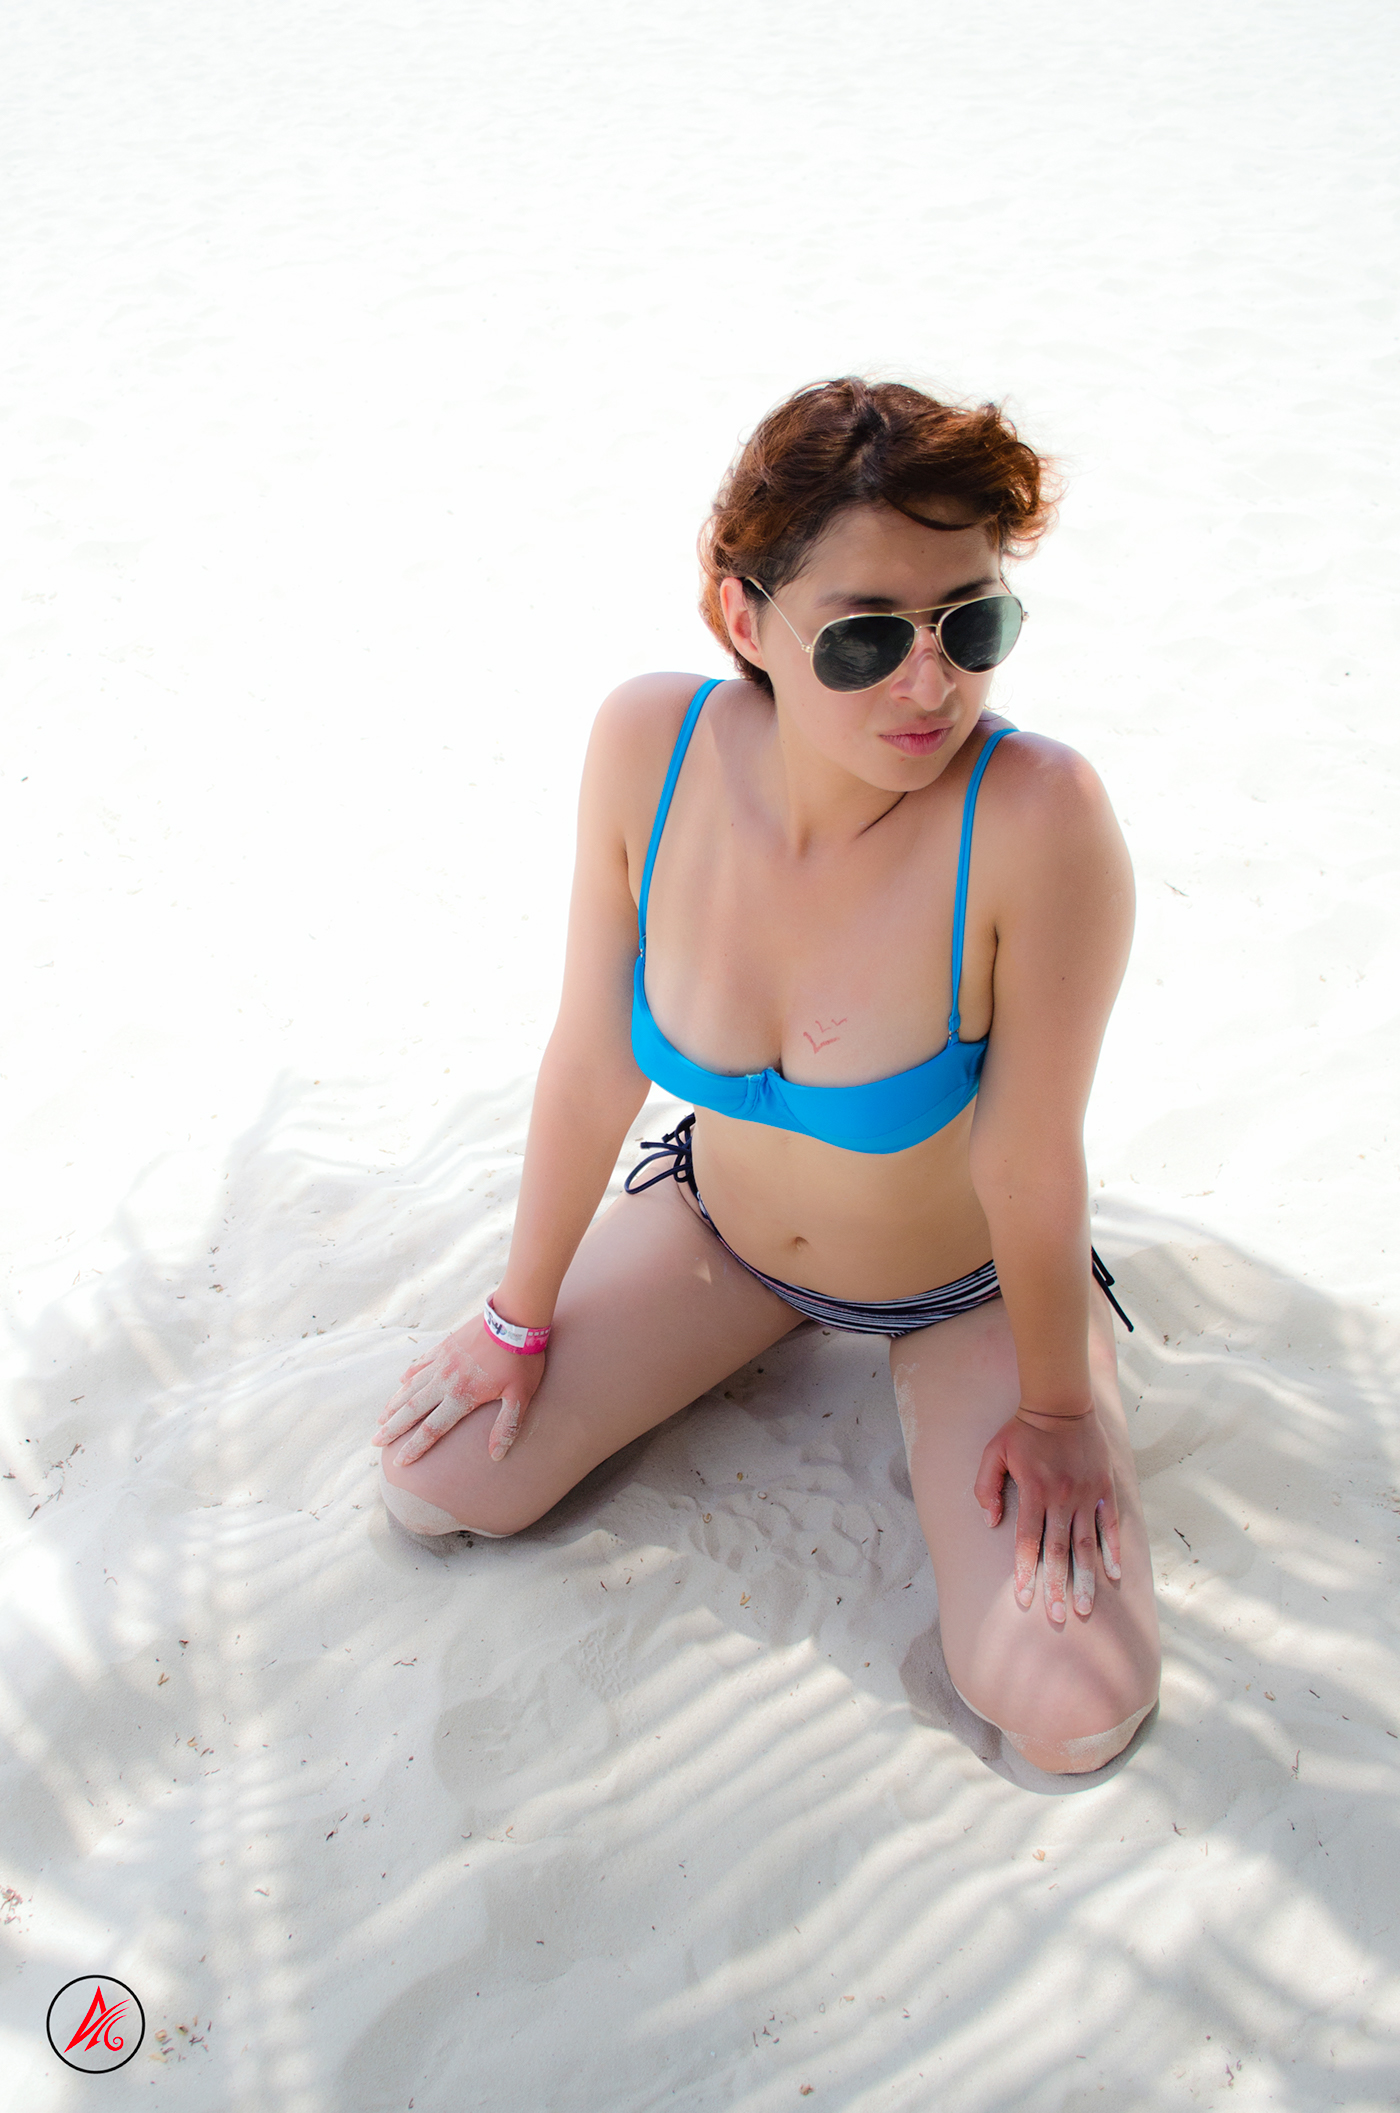 model beach bikini babe girl sexy sea Seaside water mexico